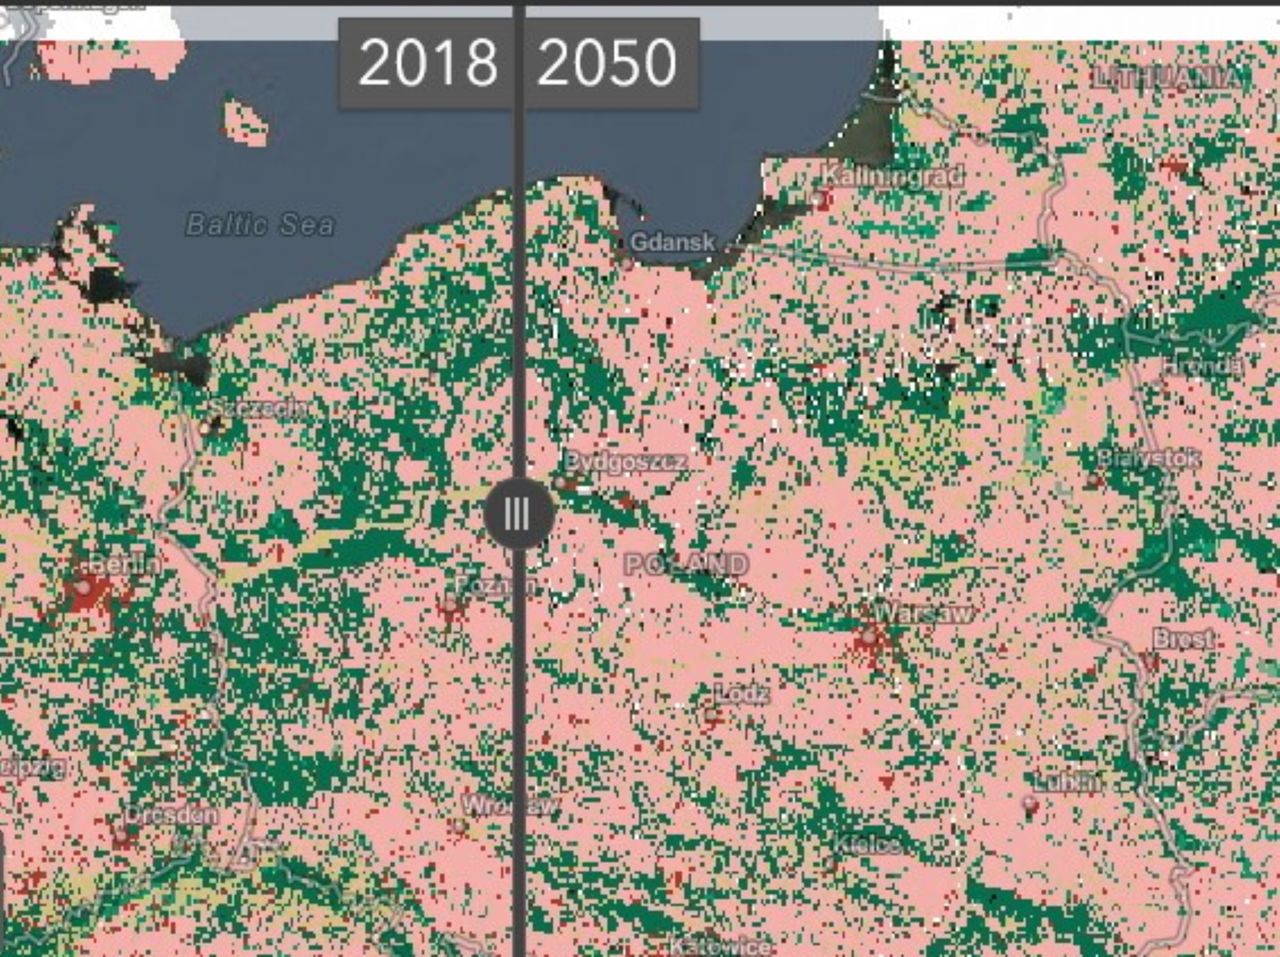 Świat w 2050 roku. Mapa pokazuje zmiany, których możemy się spodziewać - Esri Land Cover 2050 - interaktywna mapa świata